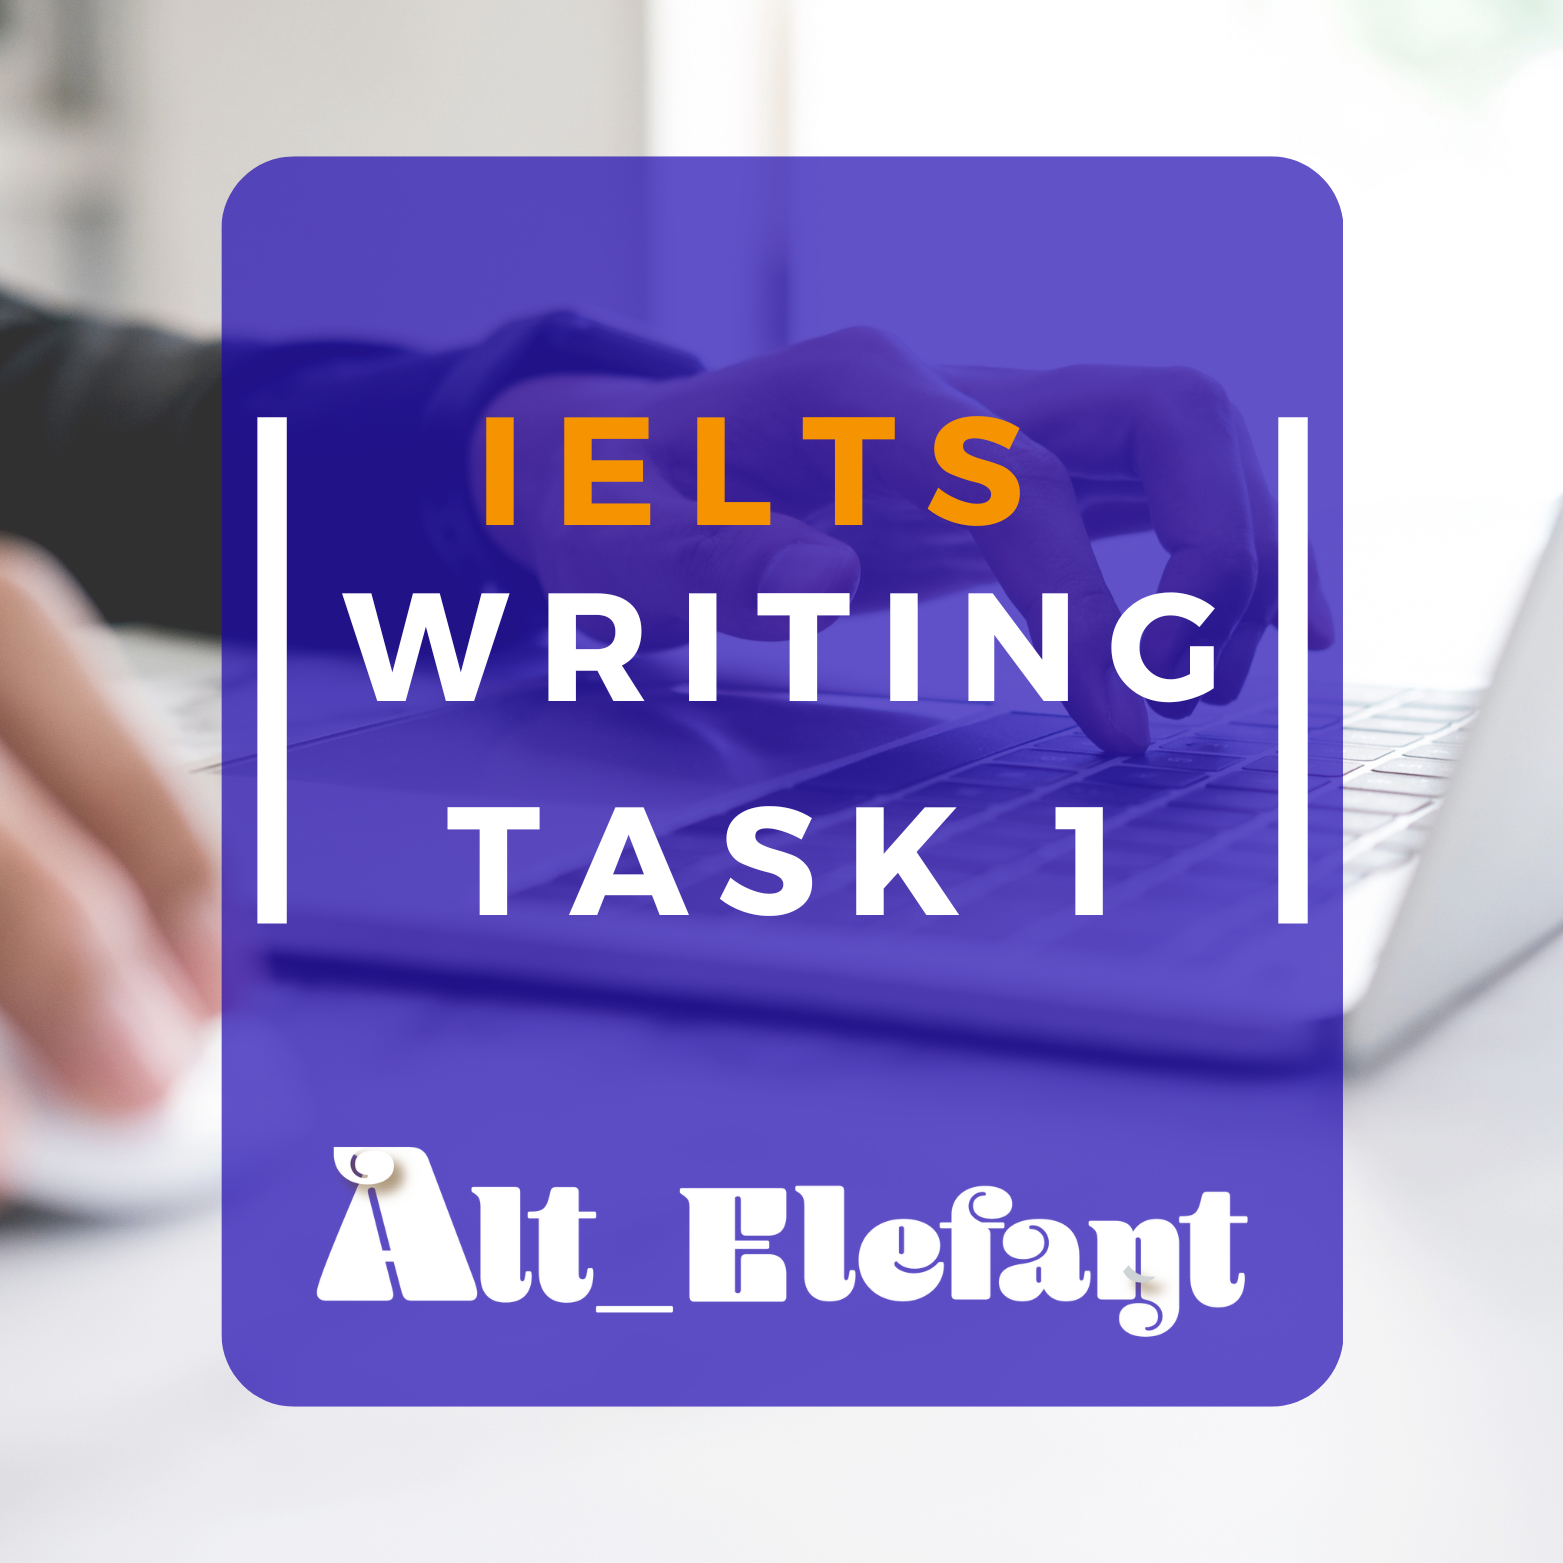 IELTS Writing Task 1 için hazırlık yapın ve en yüksek puanları alın! İşte örnek sorular ve ipuçları.